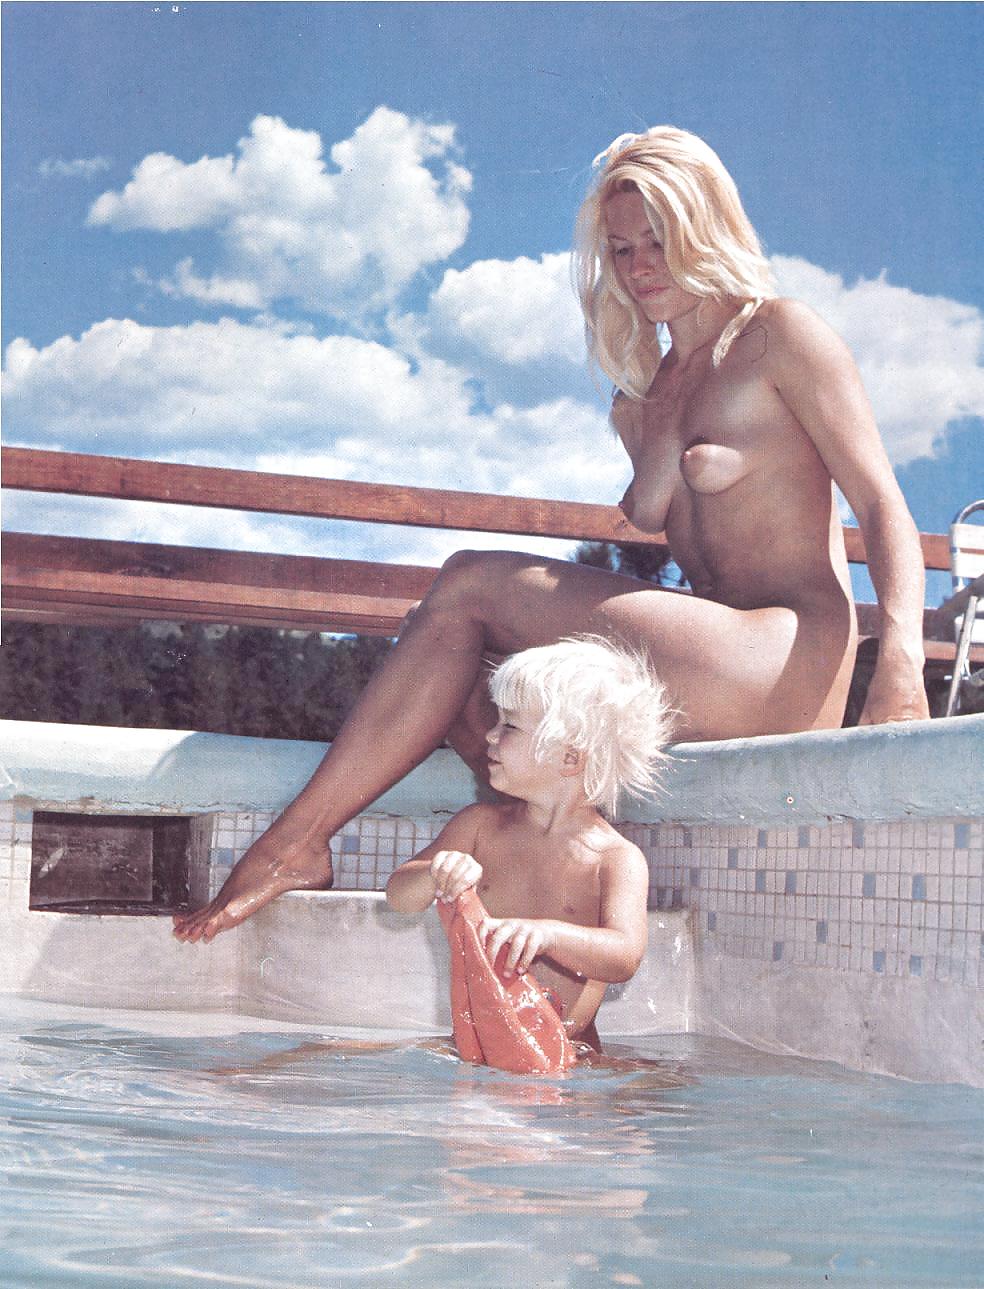 Nudo e senza vergogna - rivista nudista d'epoca
 #24241918